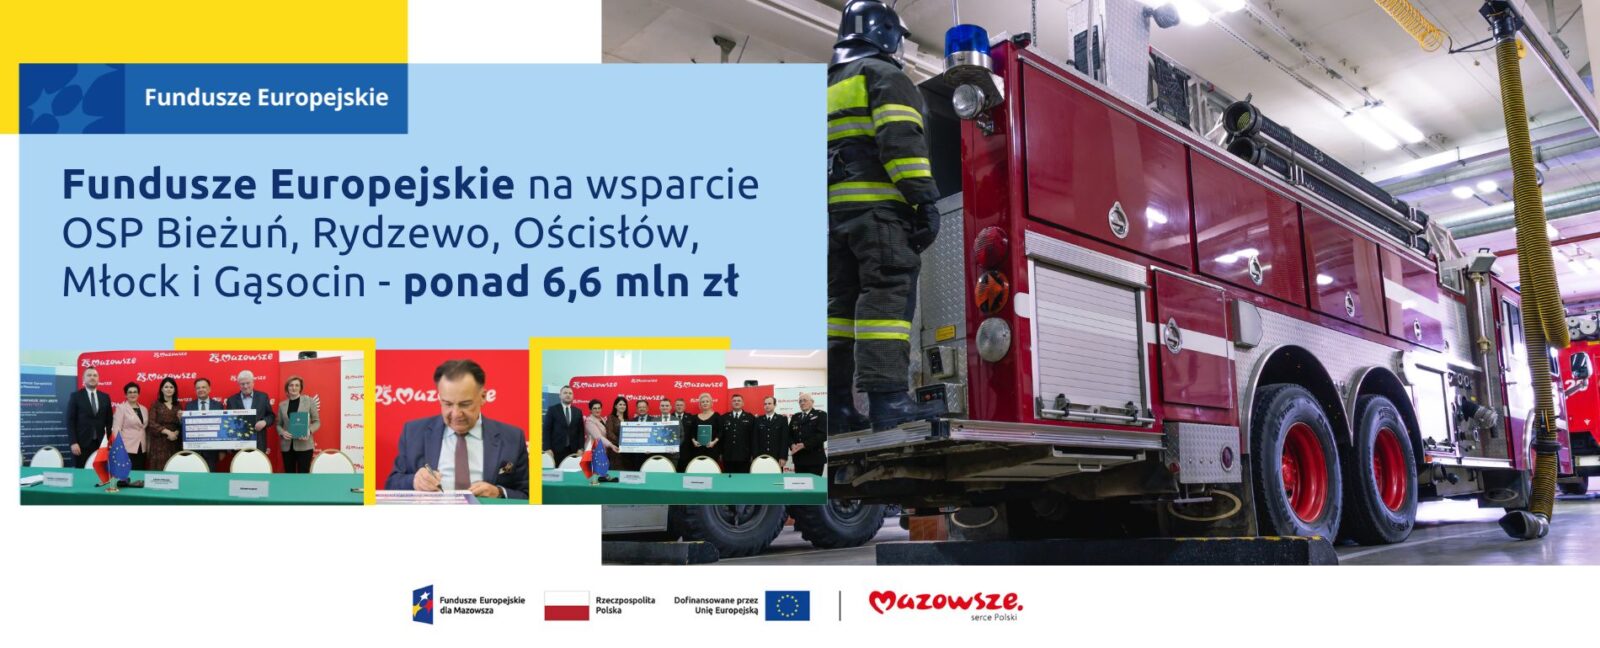 Grafika przedstawia napis Fundusze Europejskie na wsparcie OSP Bieżuń, Rydzewo, Ościsłów, Młock i Gąsocin - ponad 6,6 mln zł. Z prawej strony grafiki widać wóz strażacki jadący do pożaru.